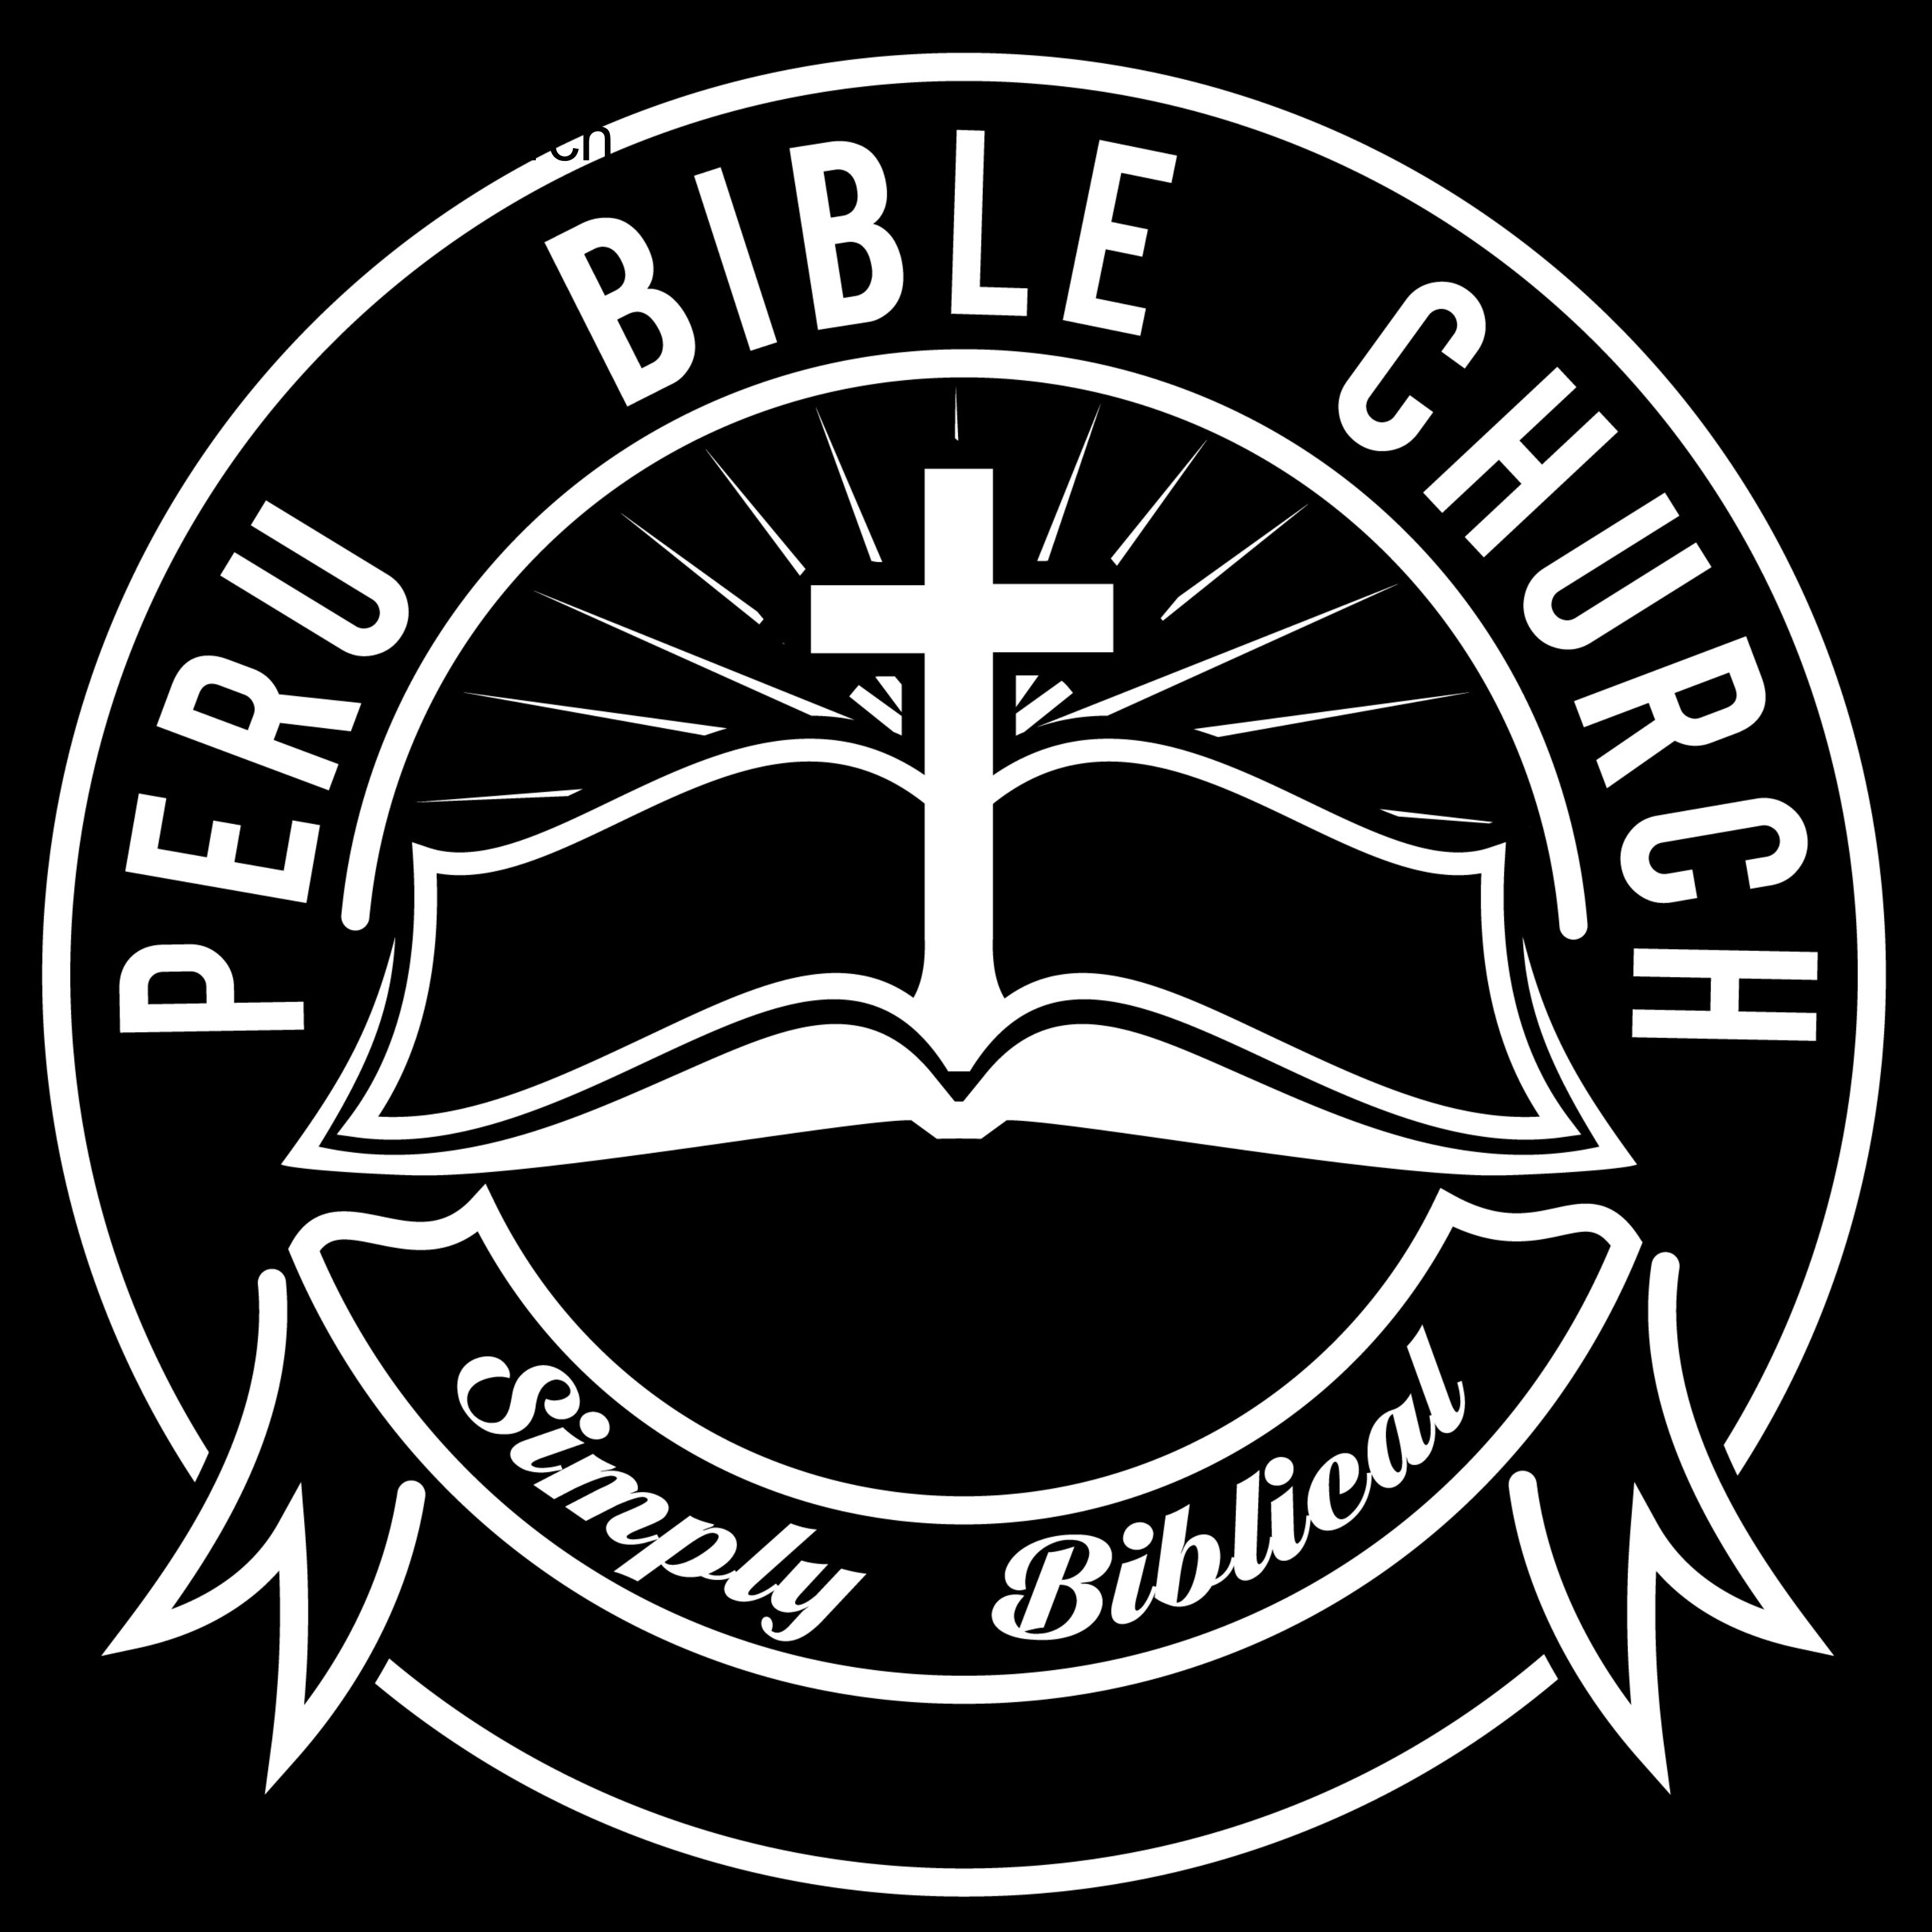 Peru Bible Church